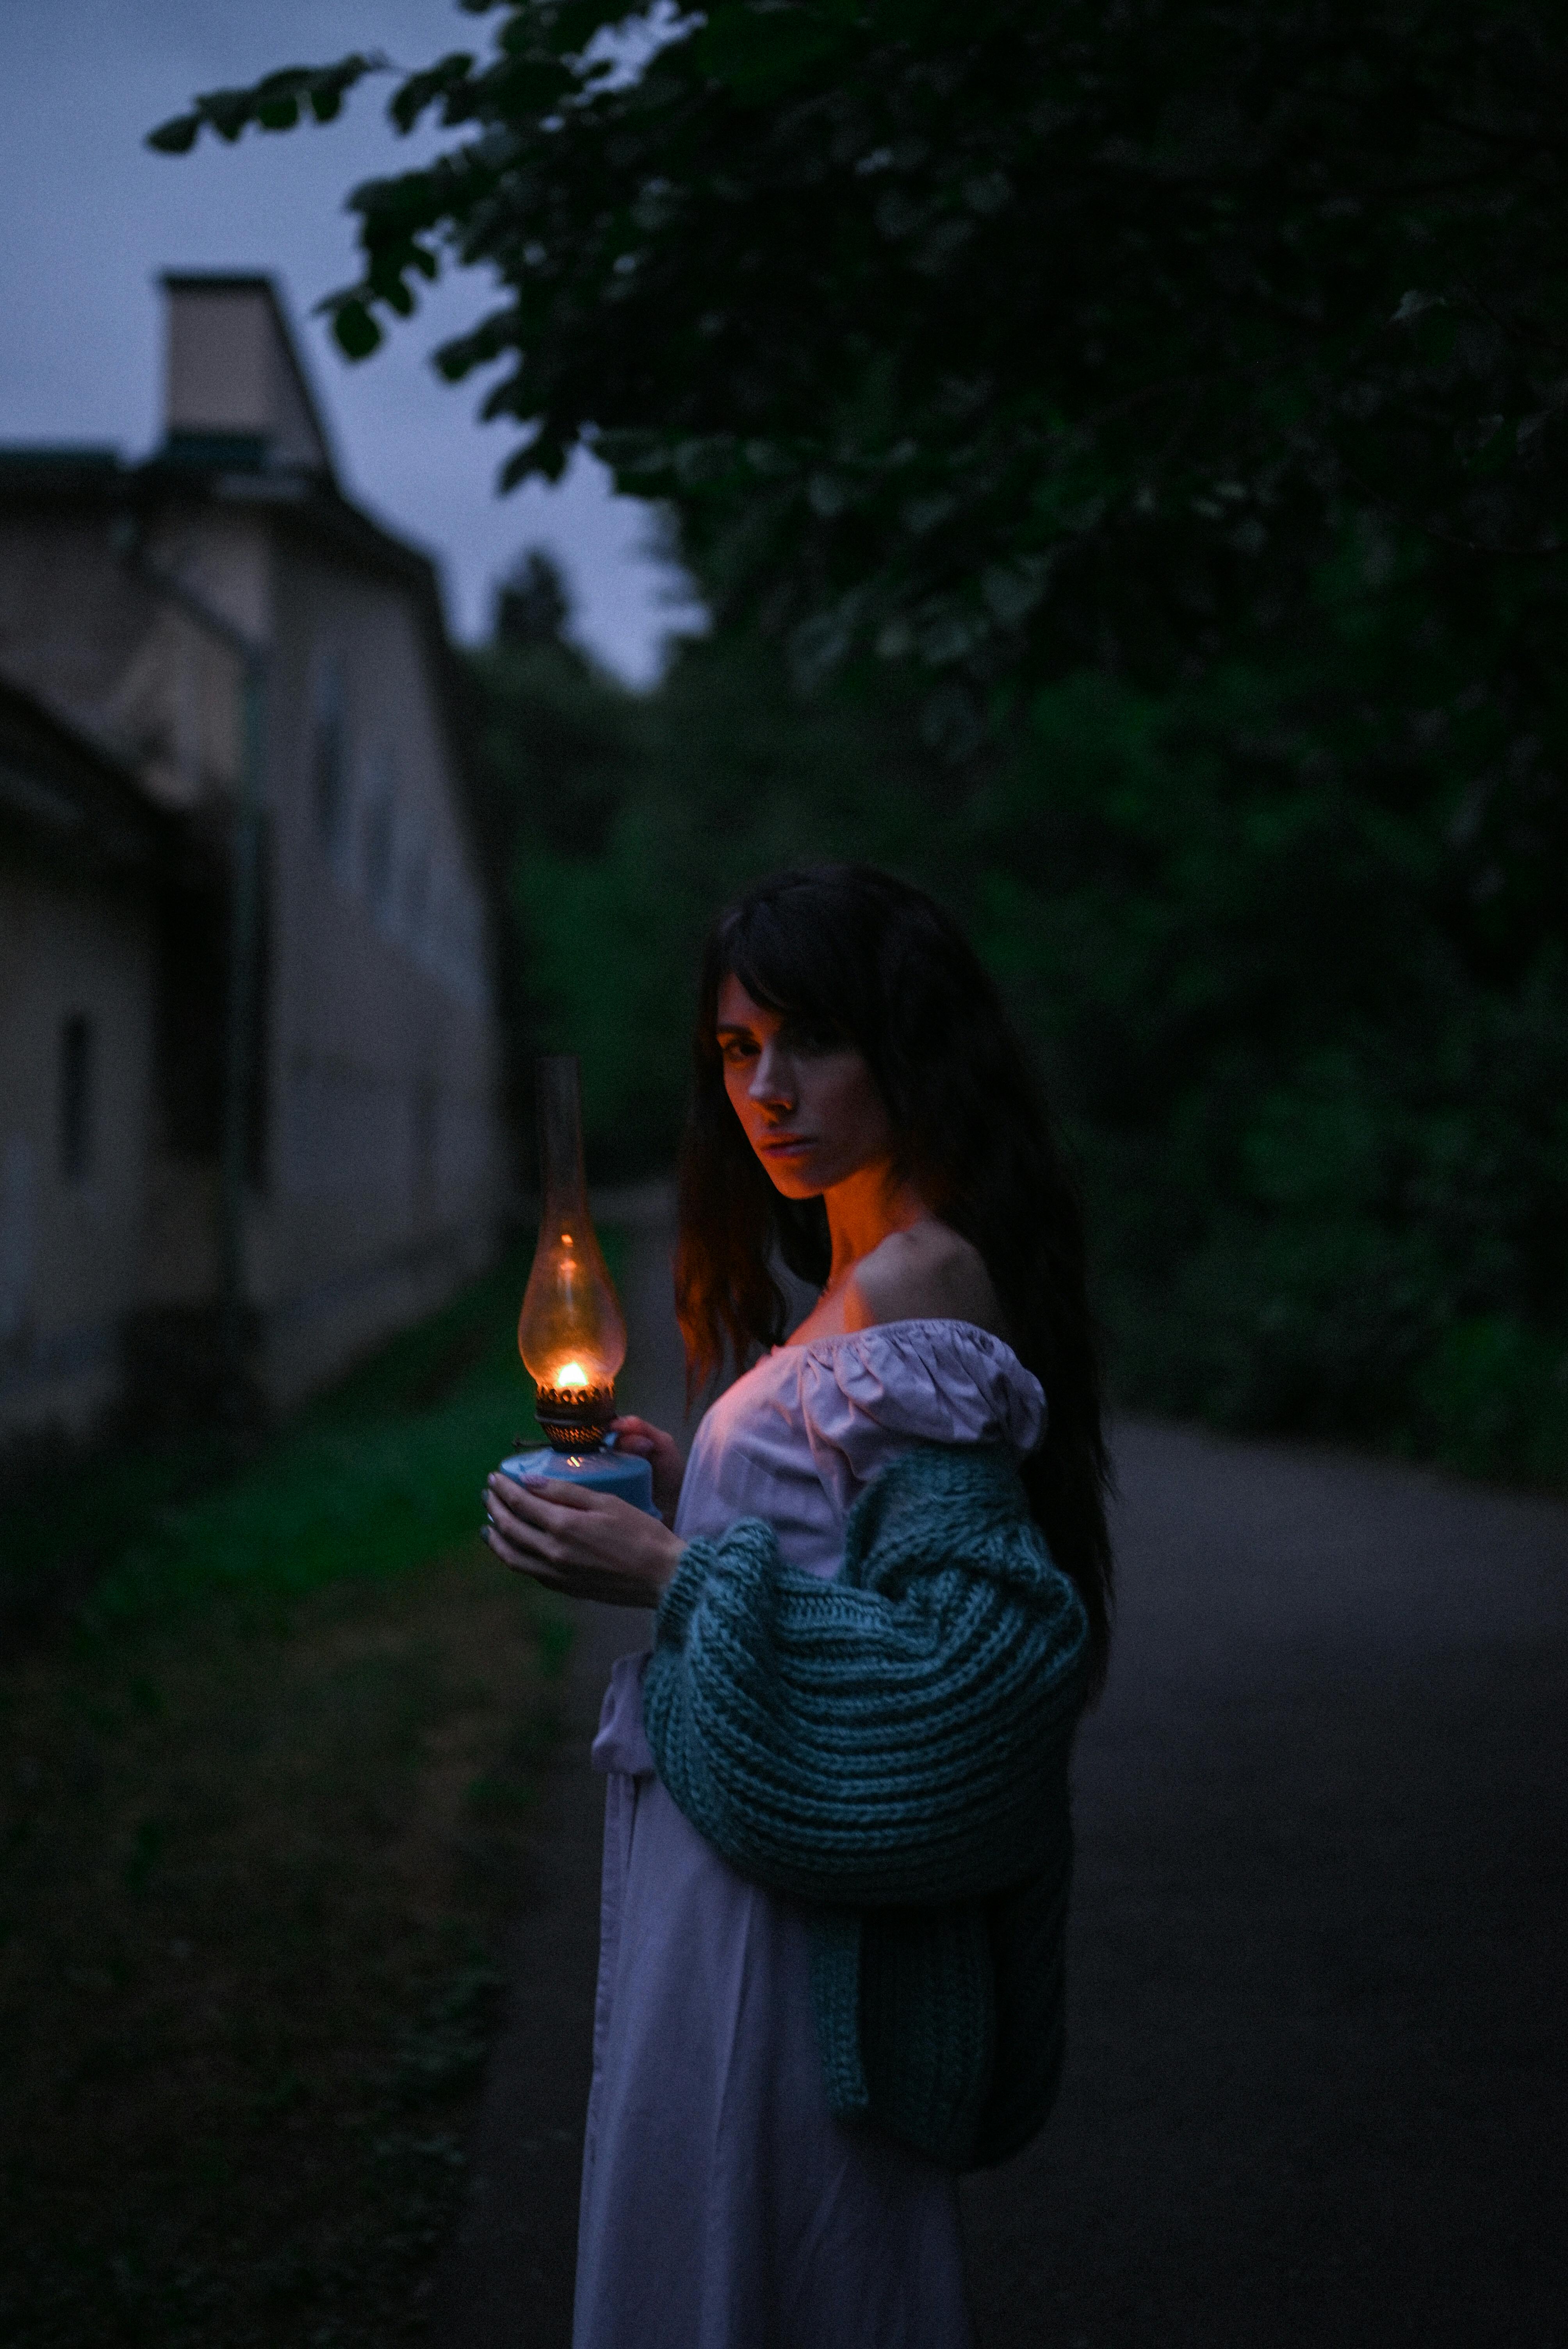 Mujer con una vieja lámpara de queroseno en la oscuridad | Fuente: Pexels